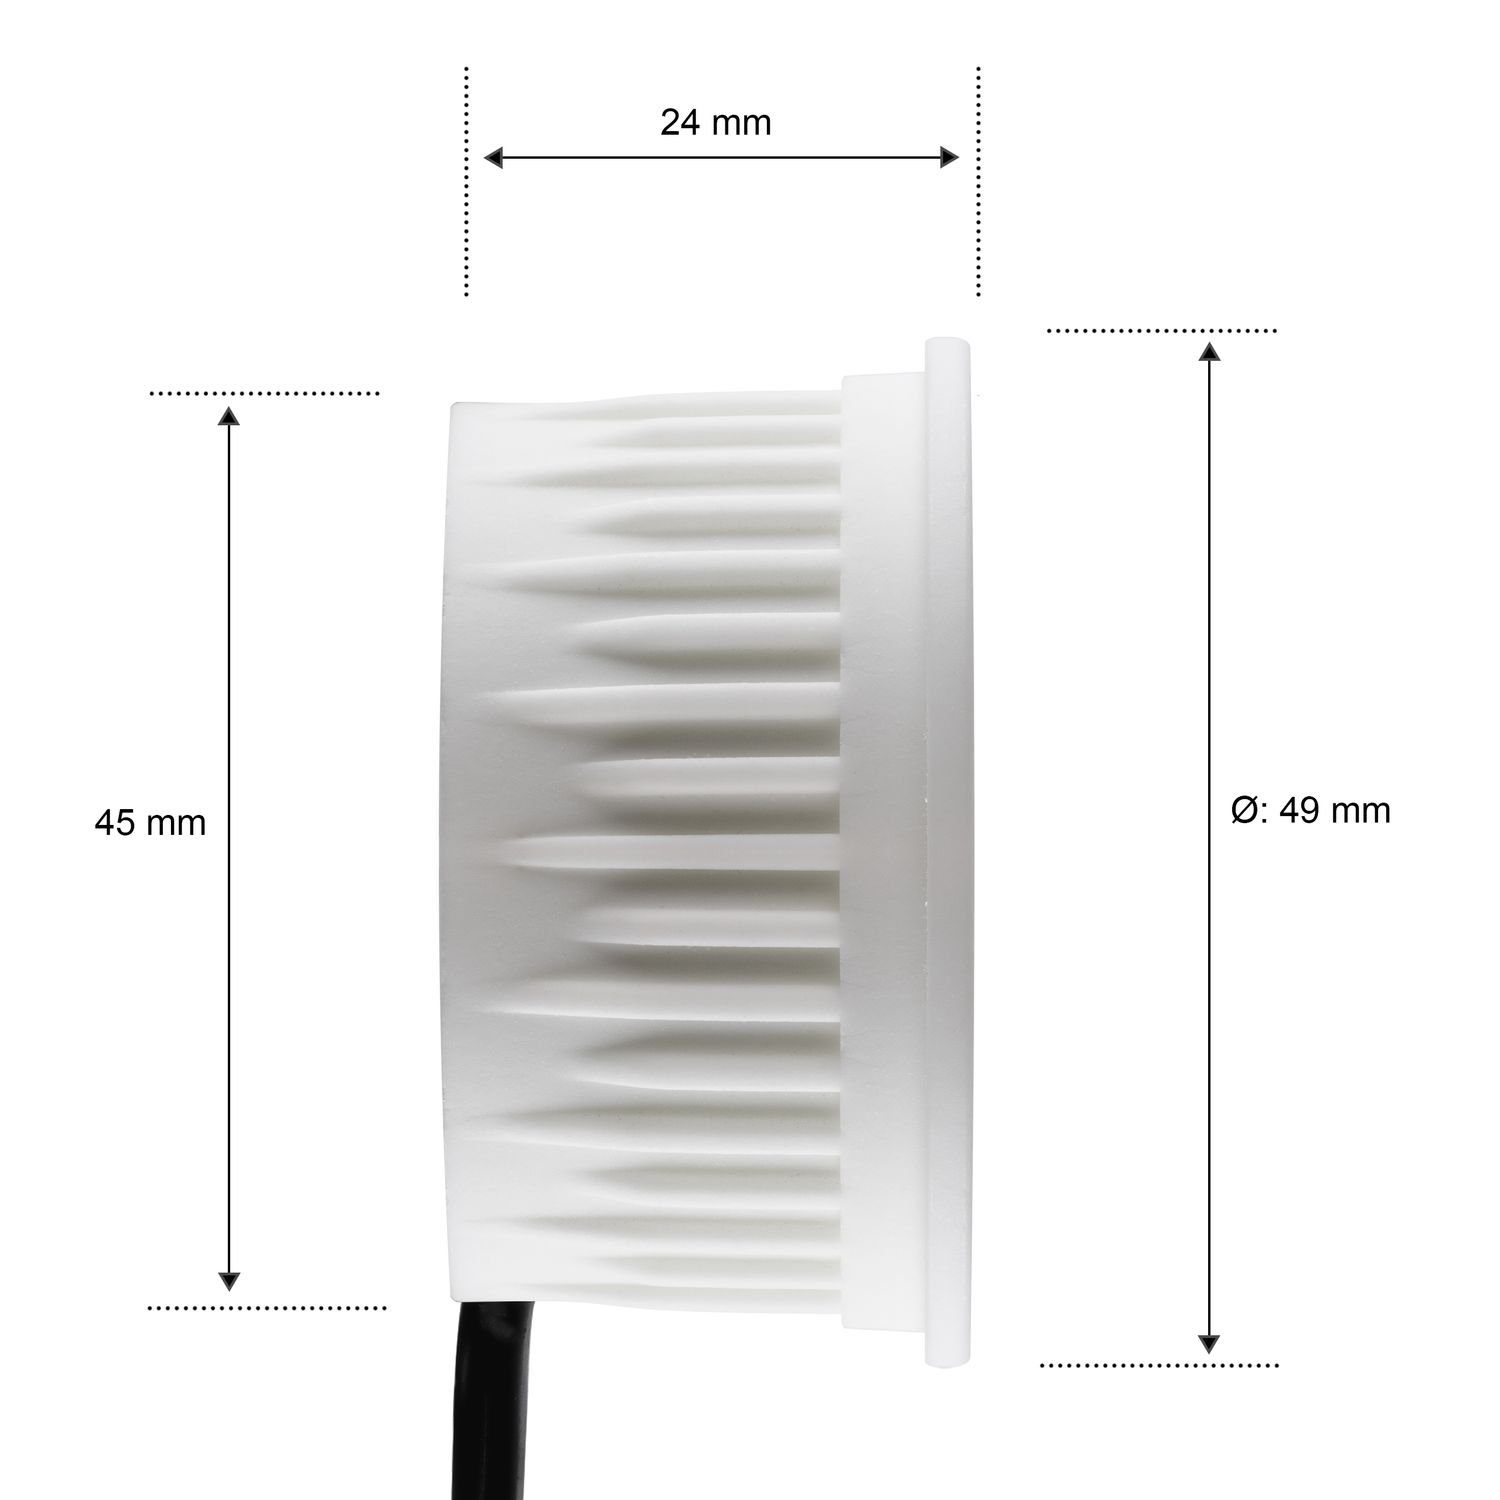 extra gebürste in LED edelstahl flach Einbaustrahler Einbaustrahler LED LEDANDO silber Set IP44 /